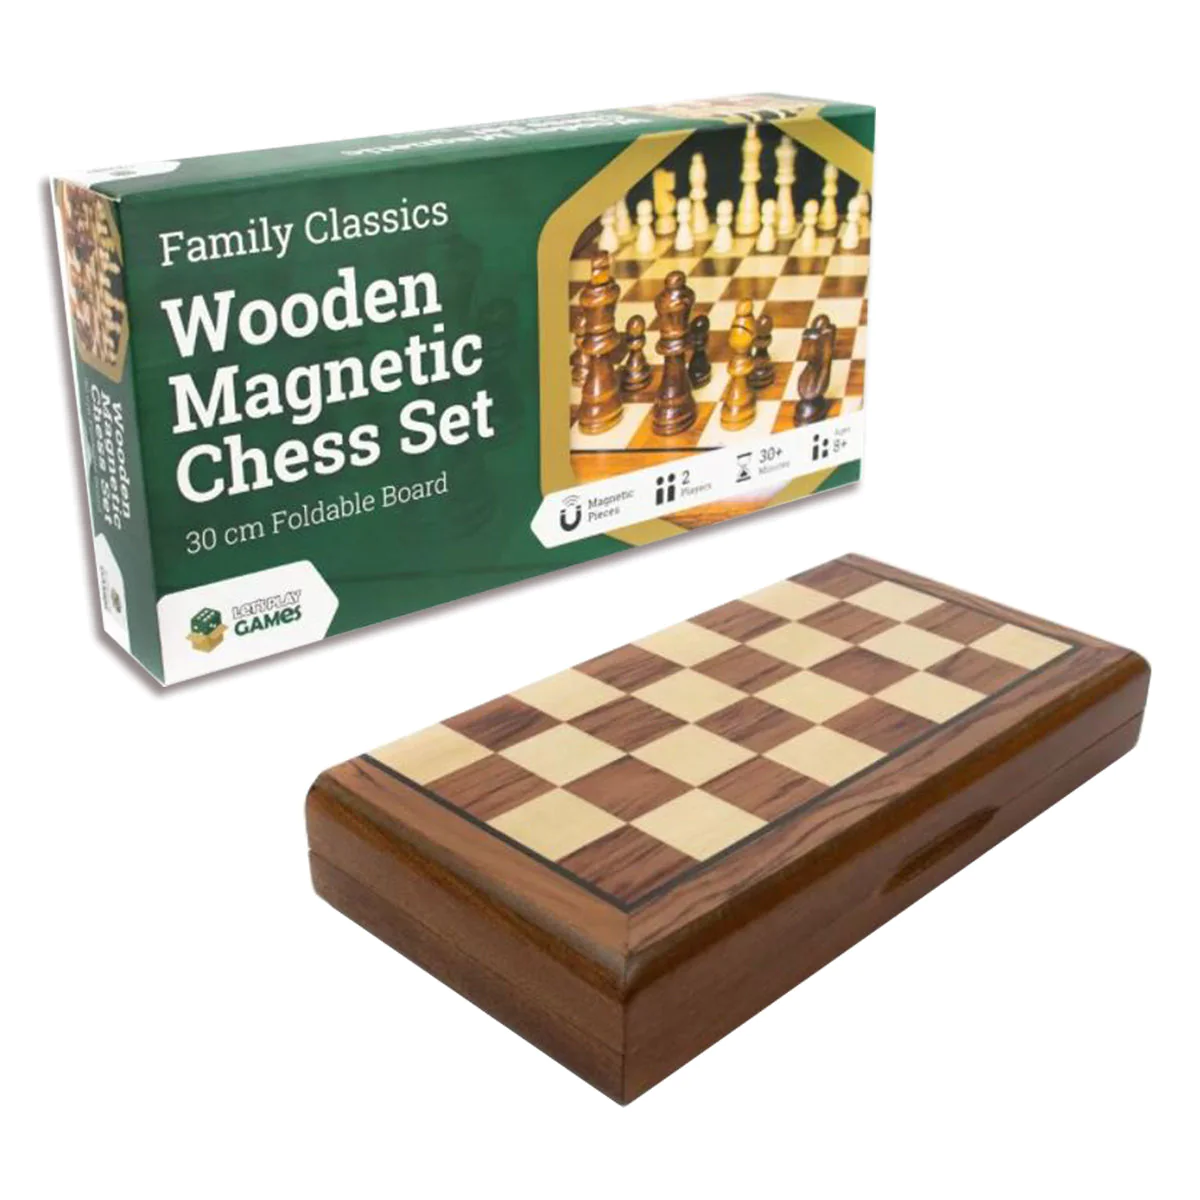 LPG Wooden Magnetic Chess Set 30 cm